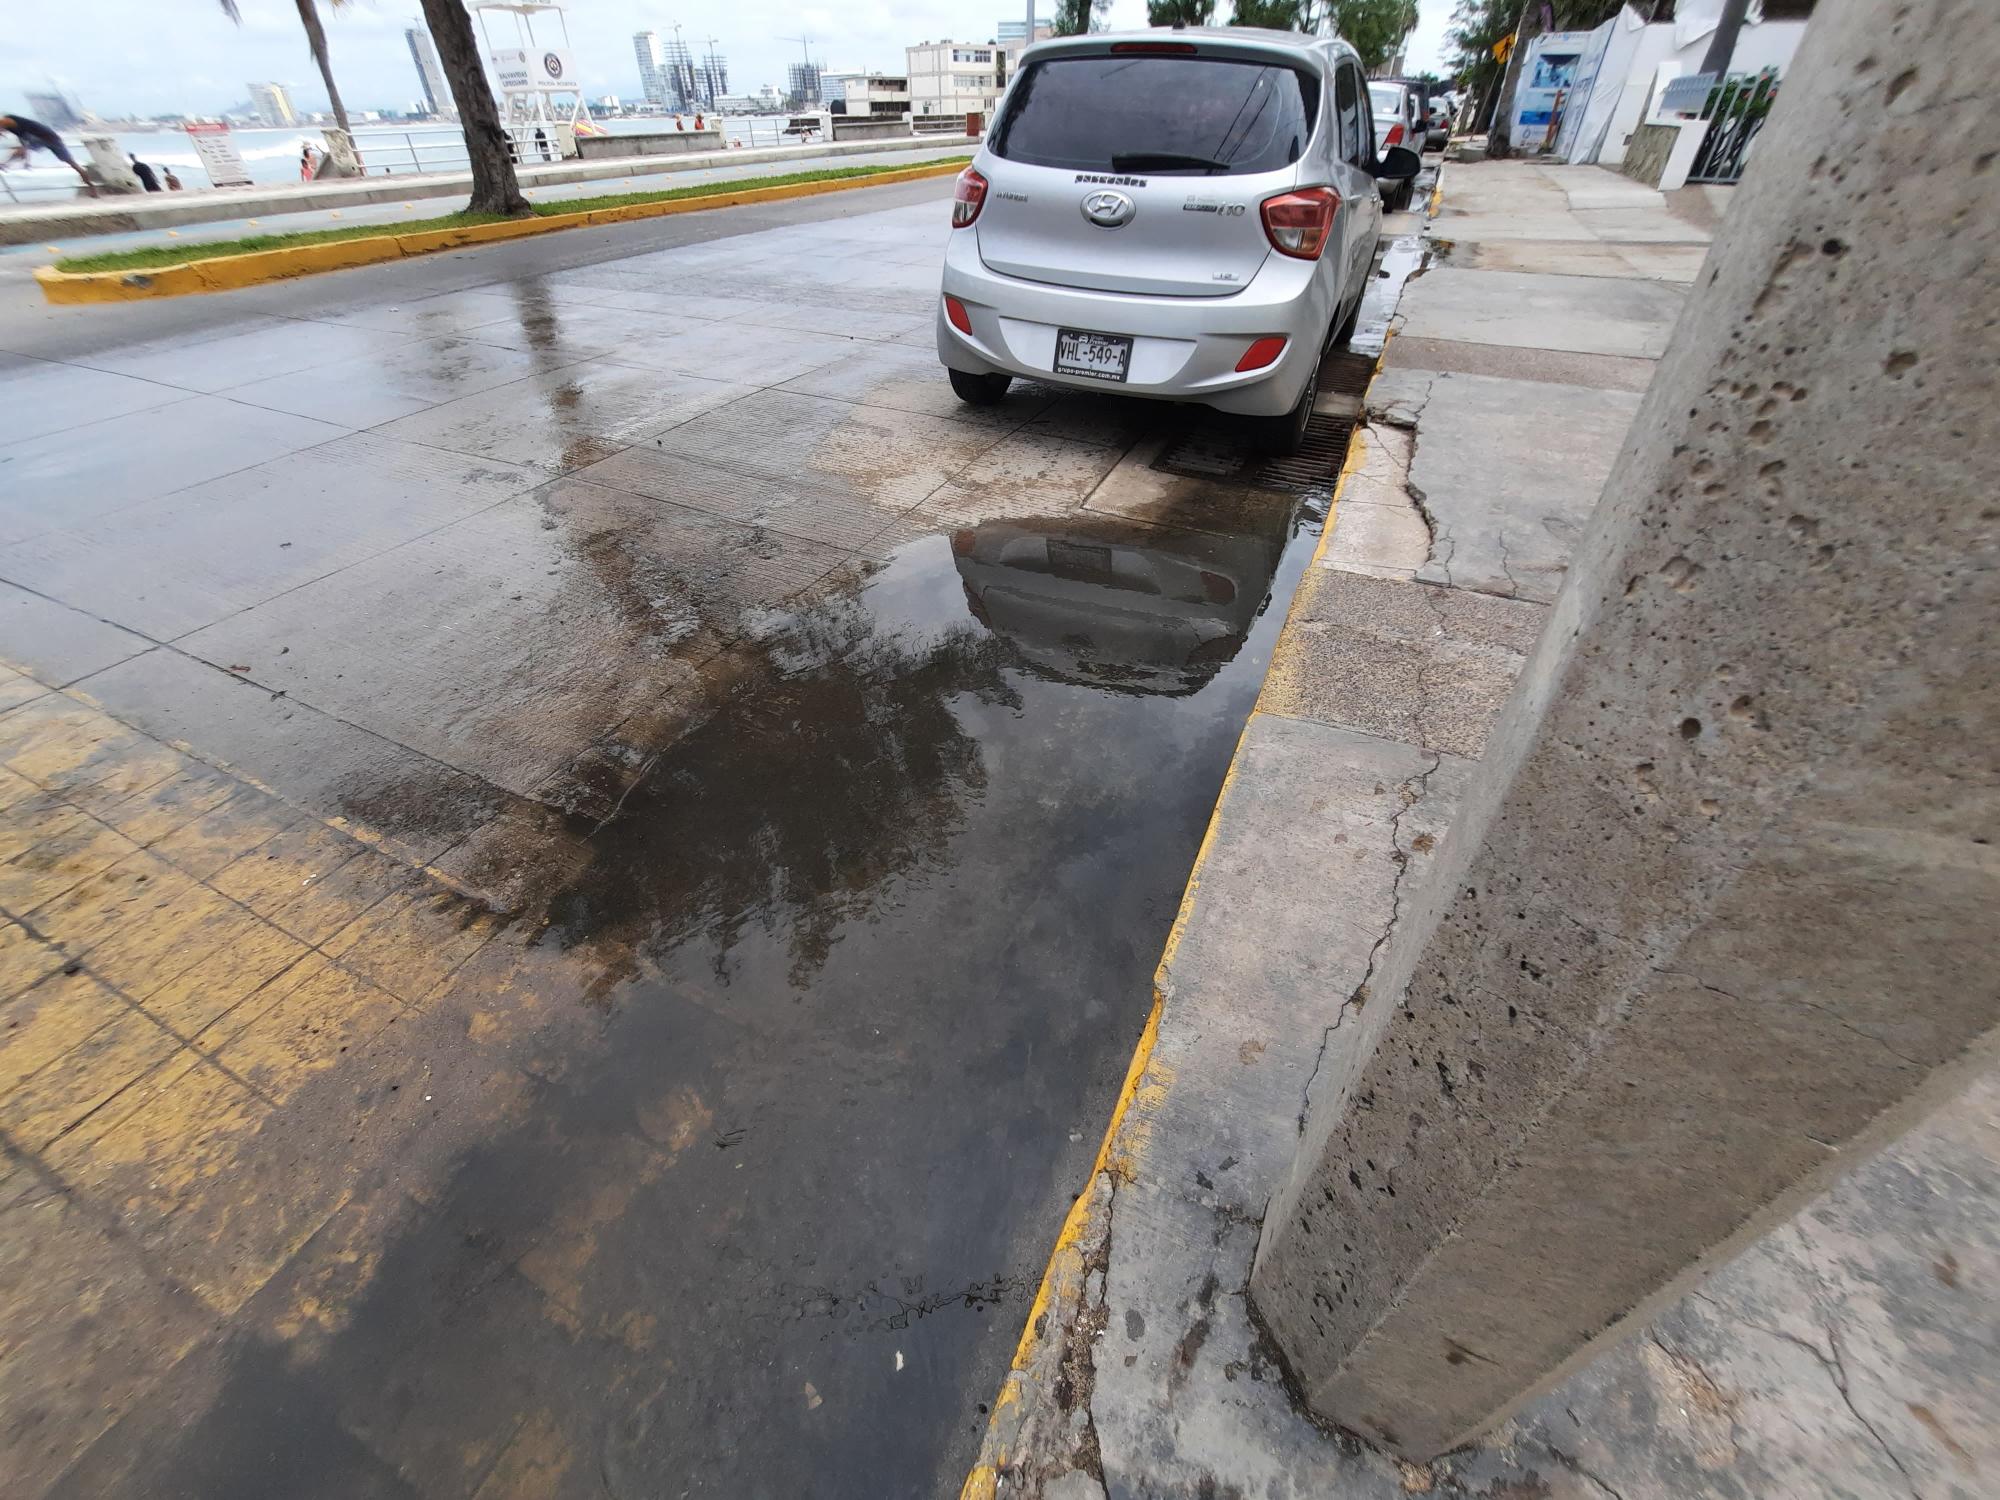 $!Persisten descargas de aguas negras en playa Los Pinitos, en Mazatlán